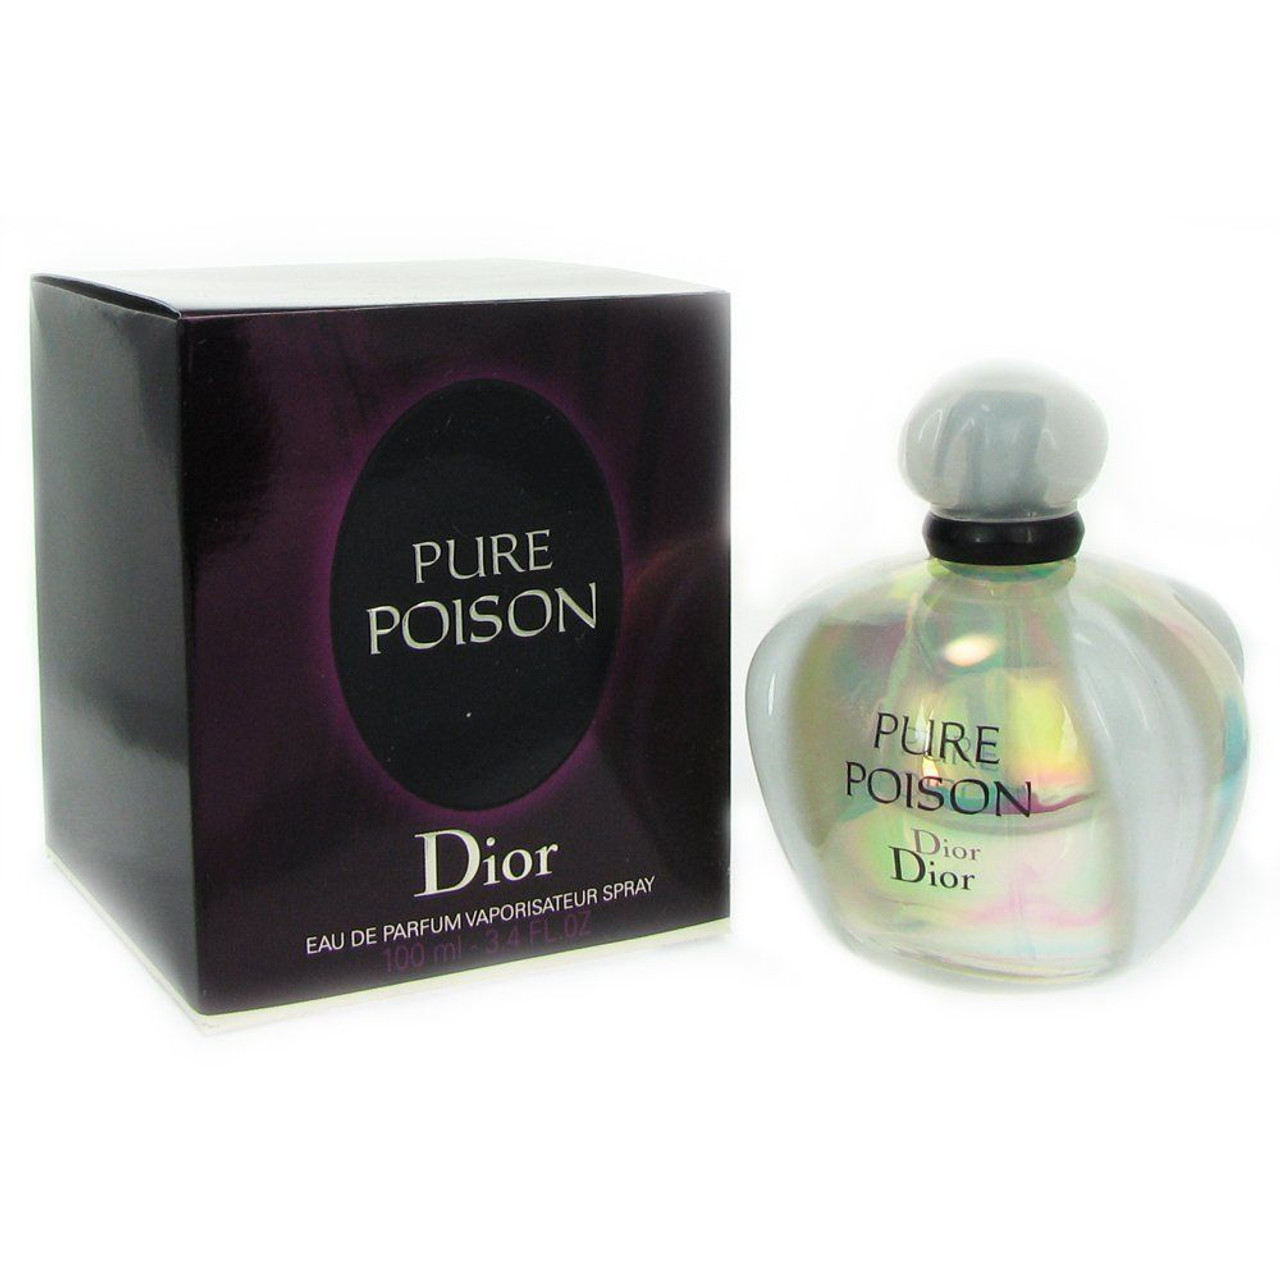 Poison Perfume Eau De Toilette by Christian Dior